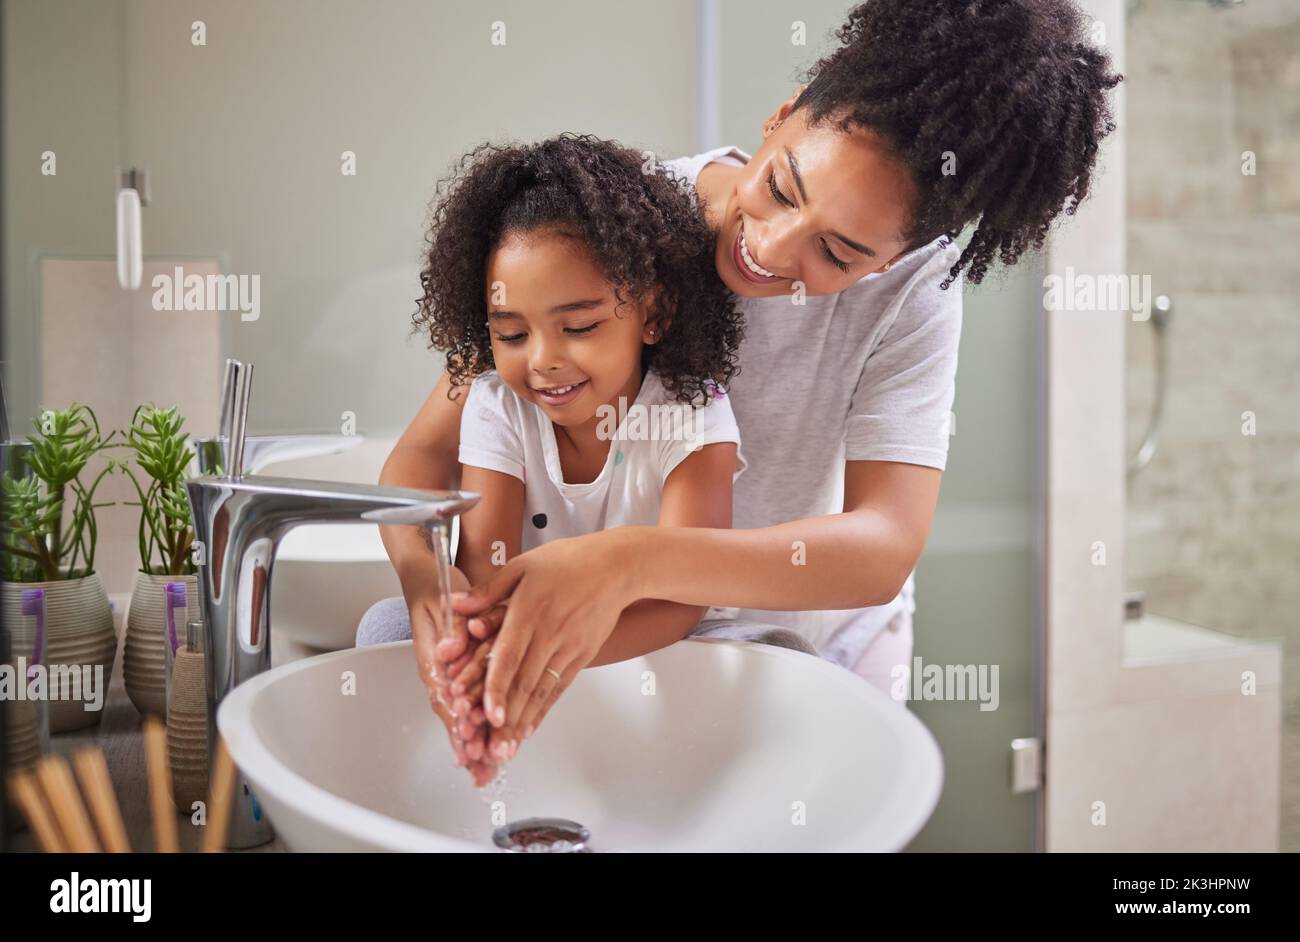 Famille, se laver les mains et l'enfant avec la maman rinçage, le nettoyage et une bonne hygiène contre les bactéries ou les germes pour la protection contre les infections ou les virus dans la salle de bains Banque D'Images